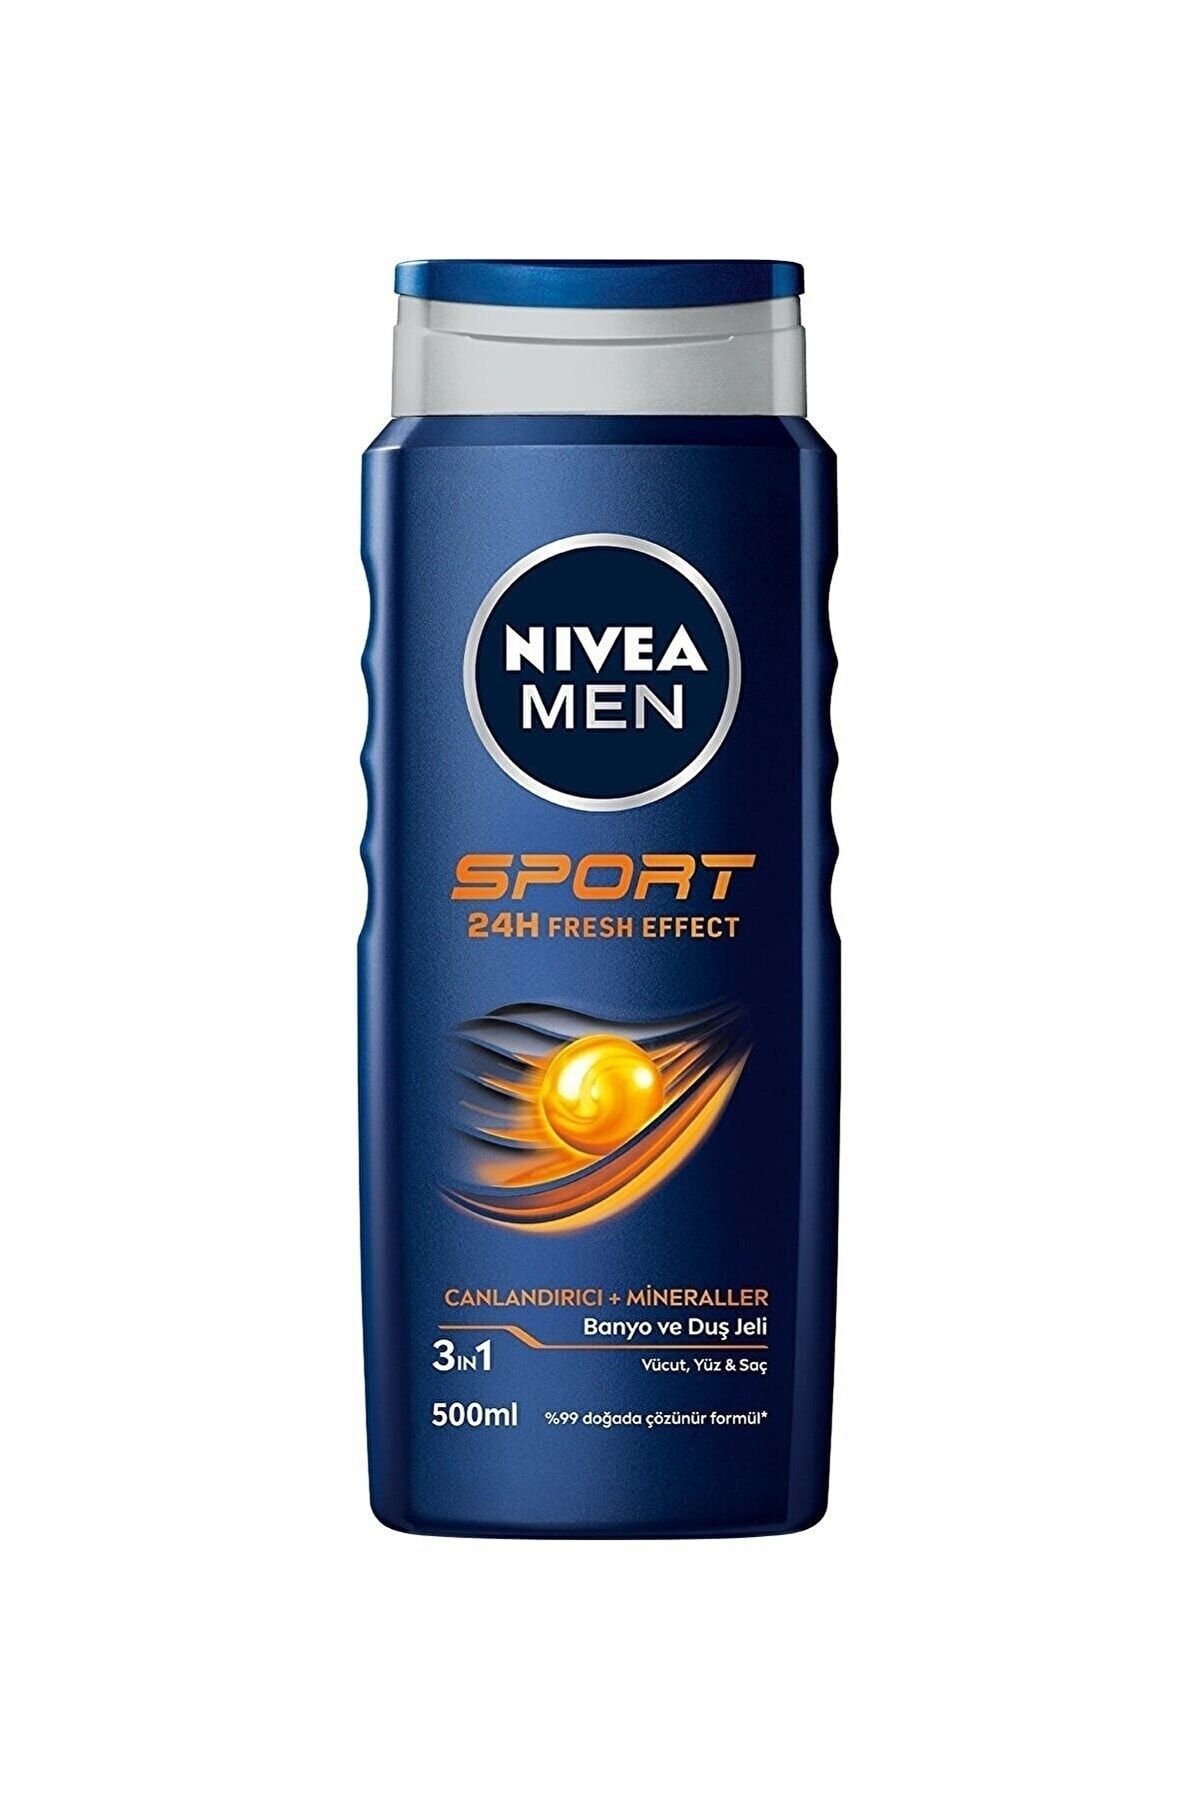 NIVEA Men Sport - Erkekler Için Canlandırıcı Mineraller Içeren Saç Ve Vücut Şampuanı 500ml